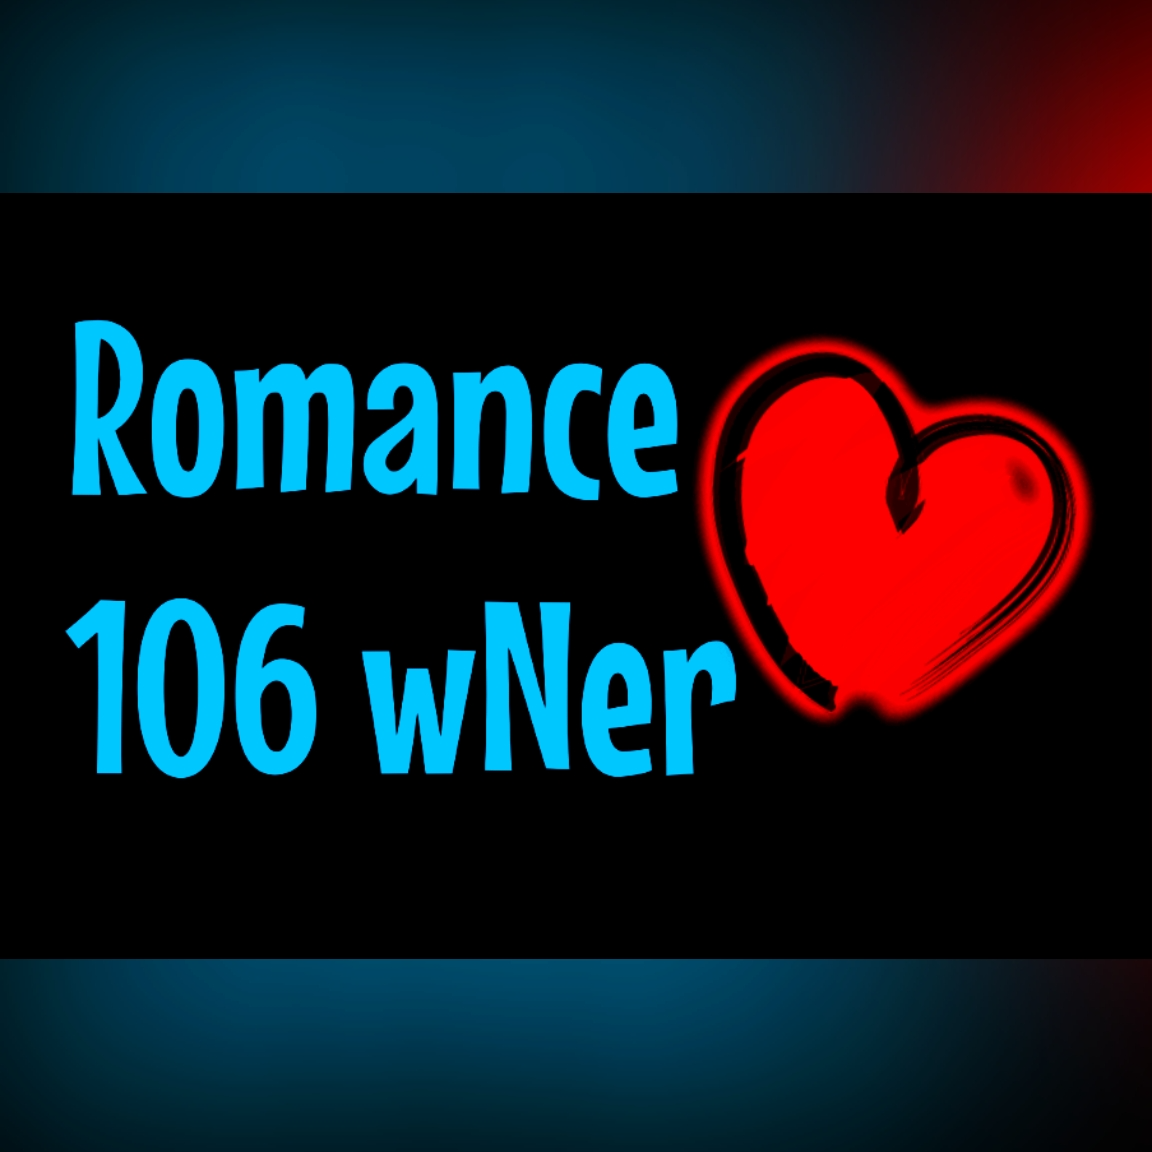 Romance-106